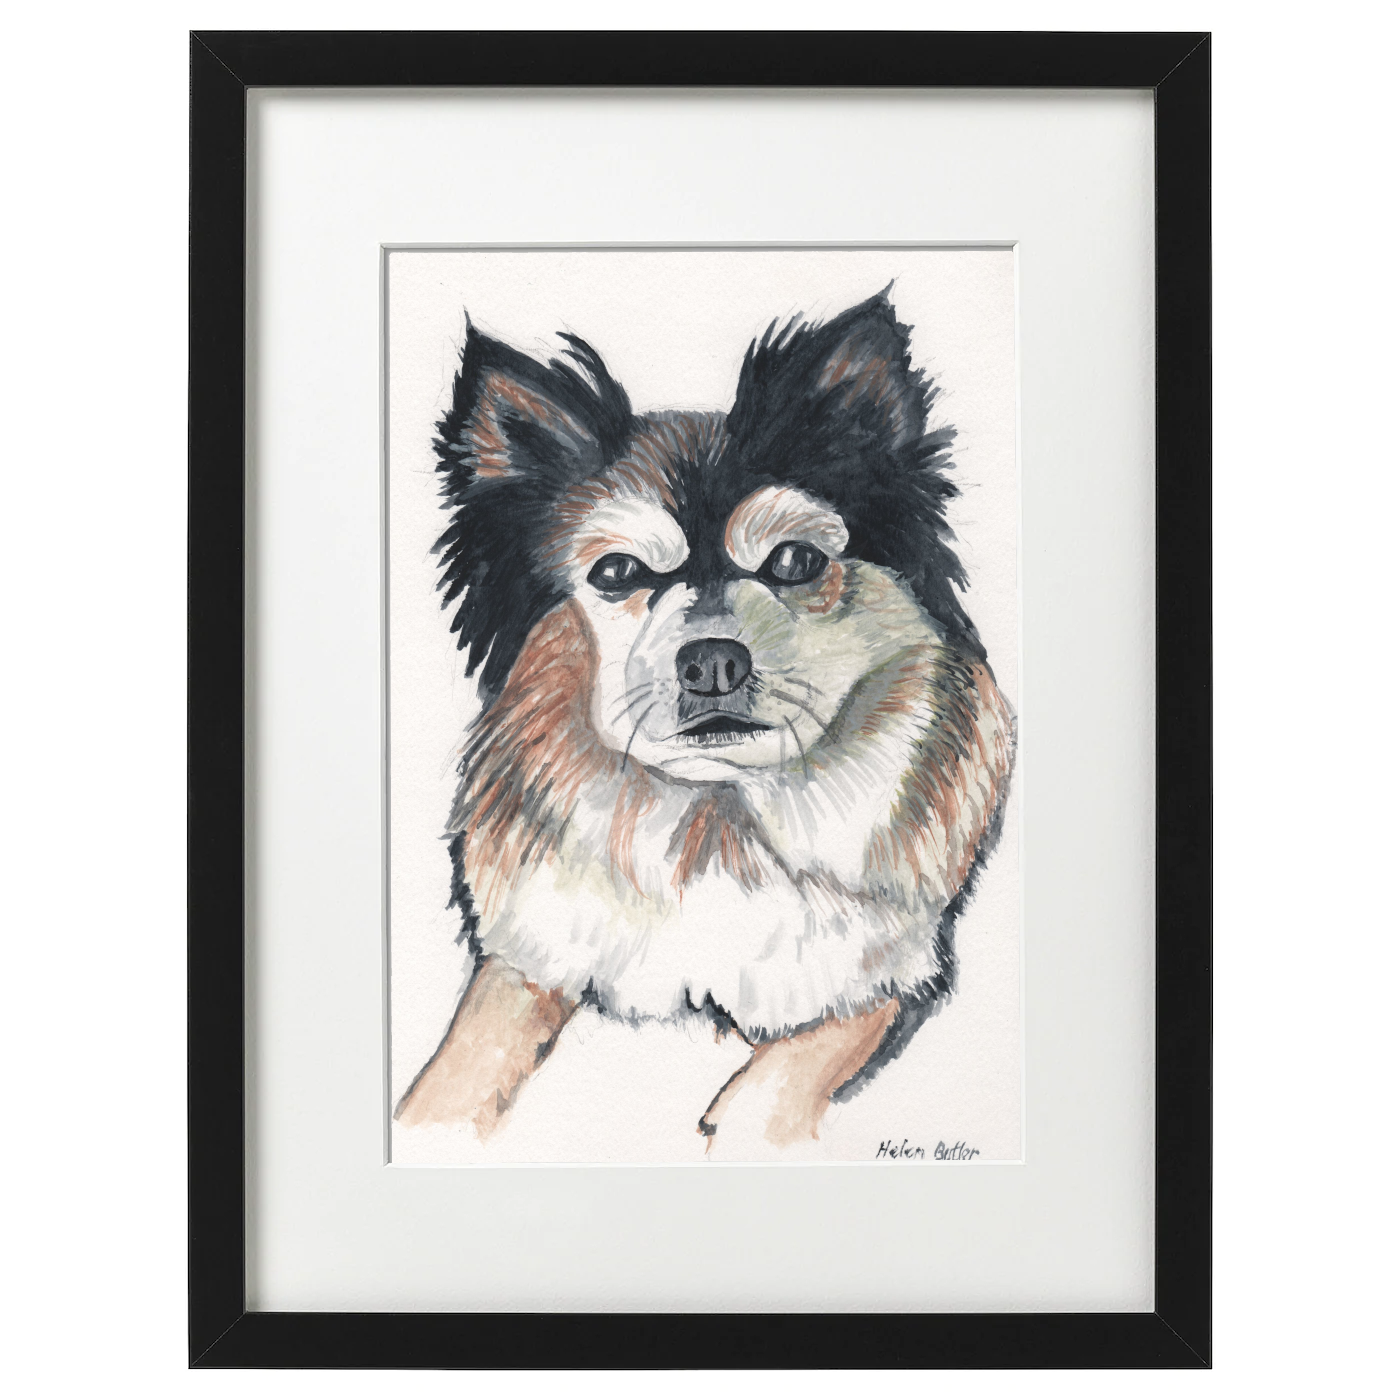 Blake the dog - watercolour